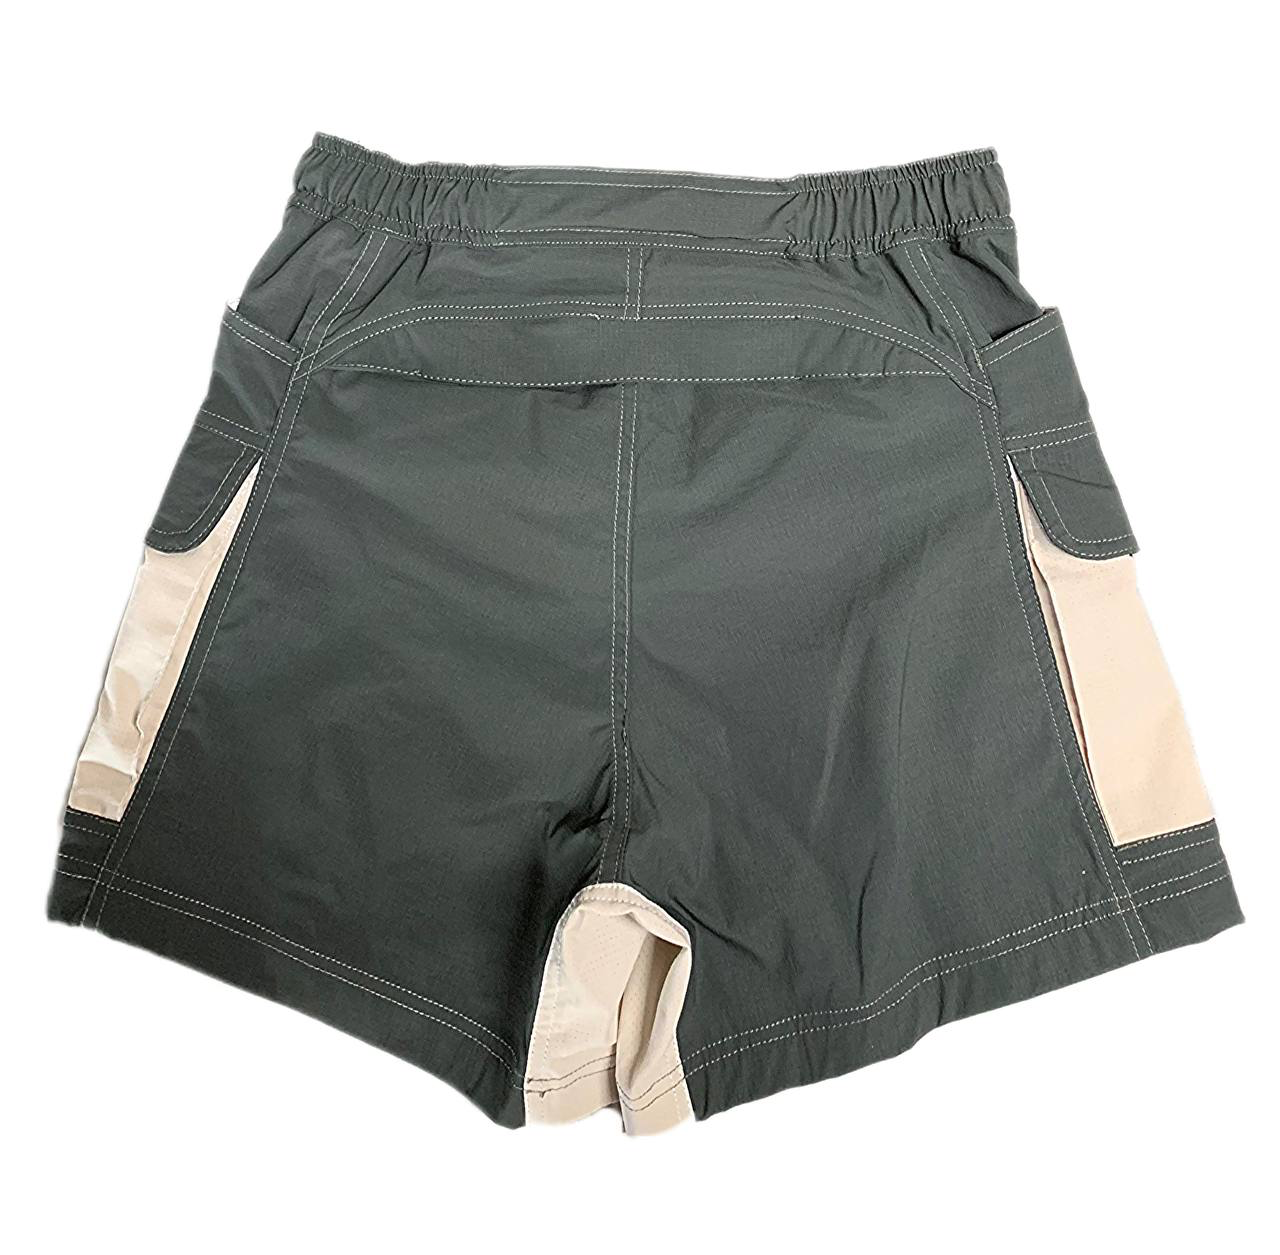 Courier PH Women's 5" City Slicker High-Waist Shorts